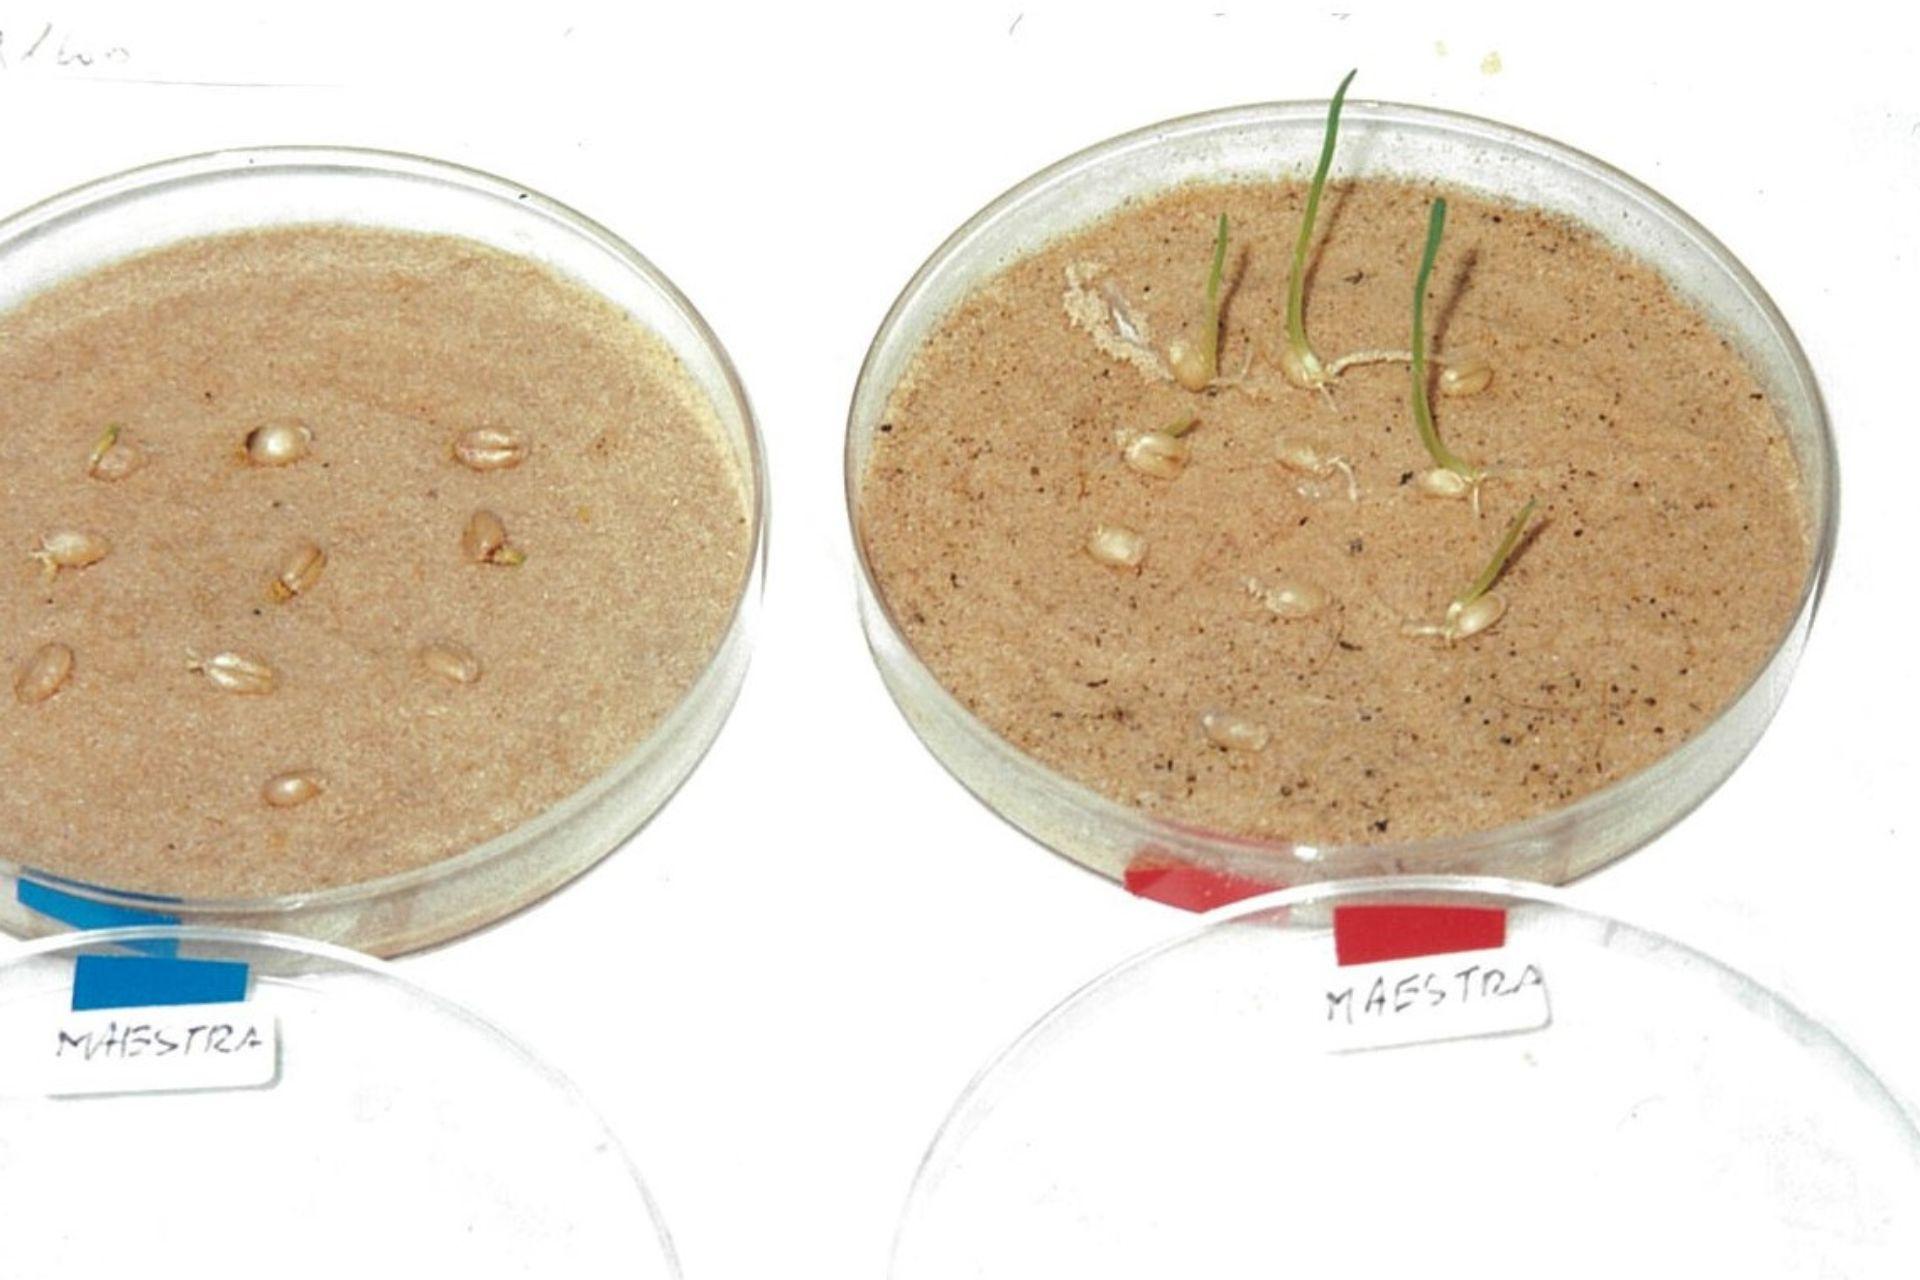 test-di-germinazione-frumento-in-sabbia-desertica-2001-BioAksxter.jpg